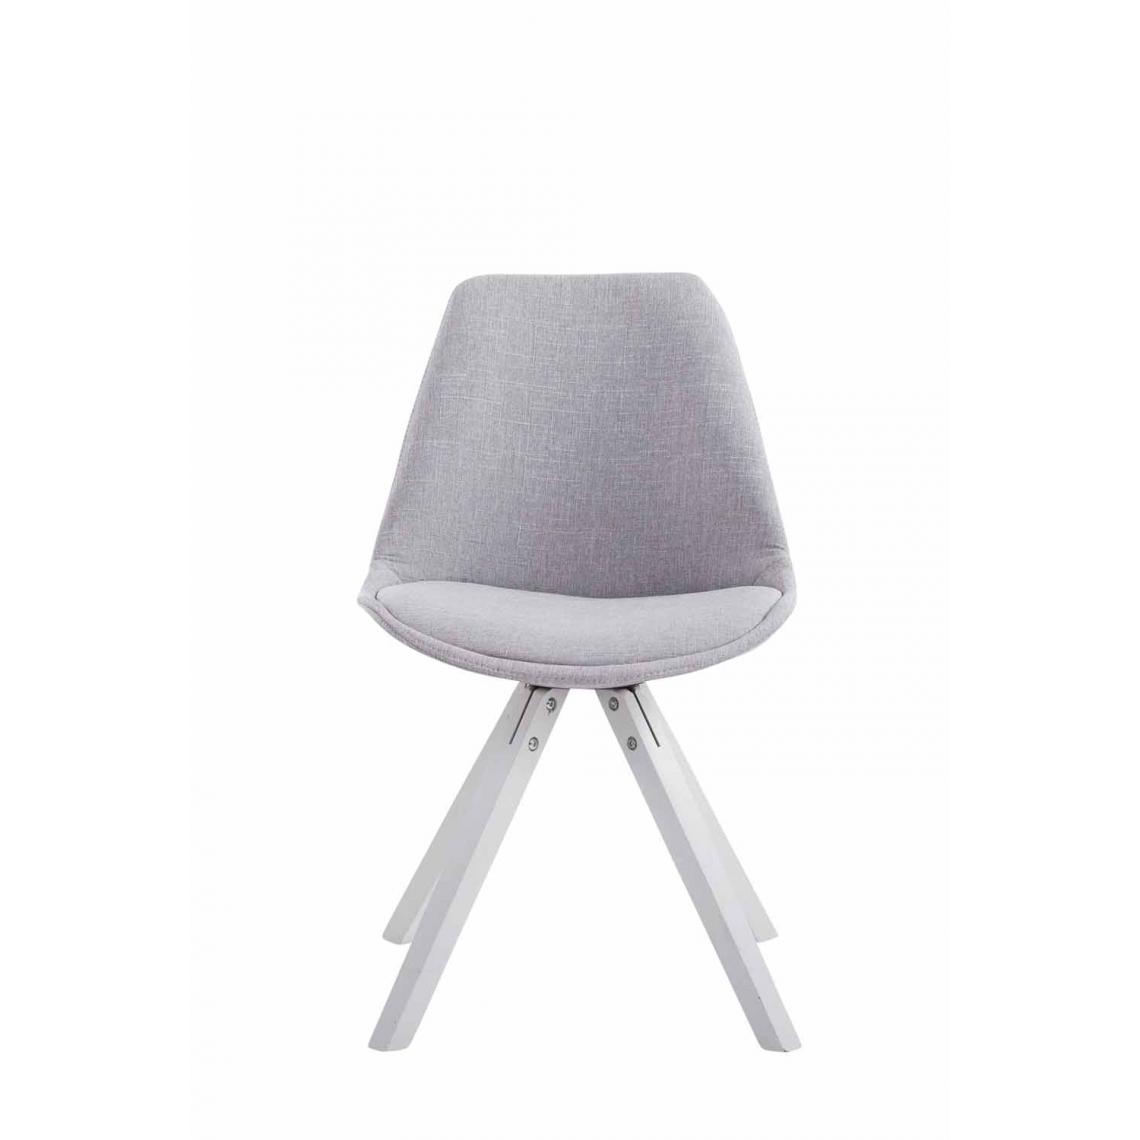 Icaverne - Stylé Chaise visiteur serie Katmandou tissu carré blanc (chêne) couleur gris - Chaises